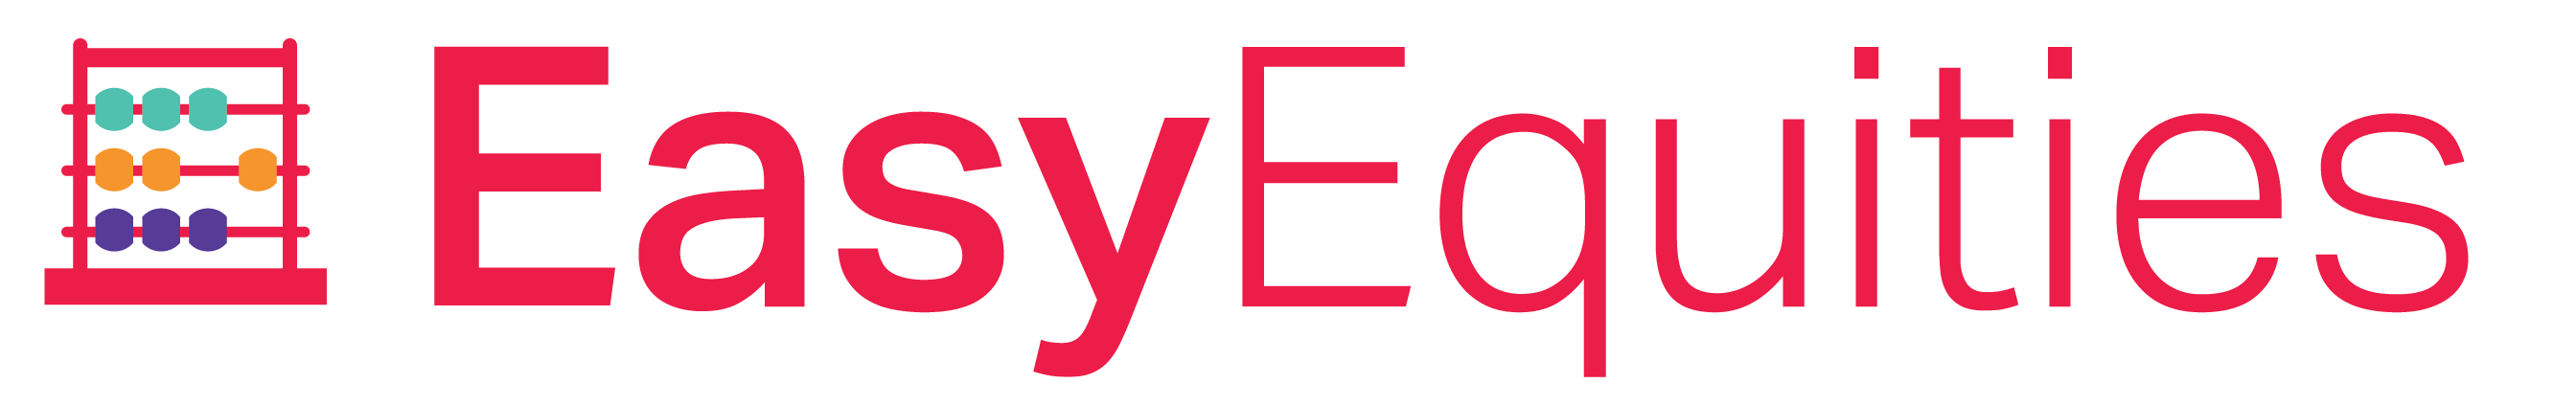 easyequities-logo